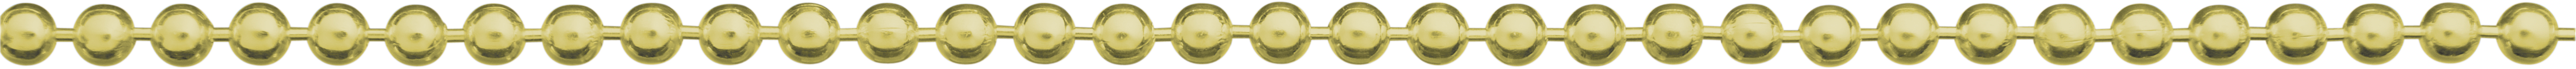 Ball chain gold 585/-Gg Ø 2.50mm